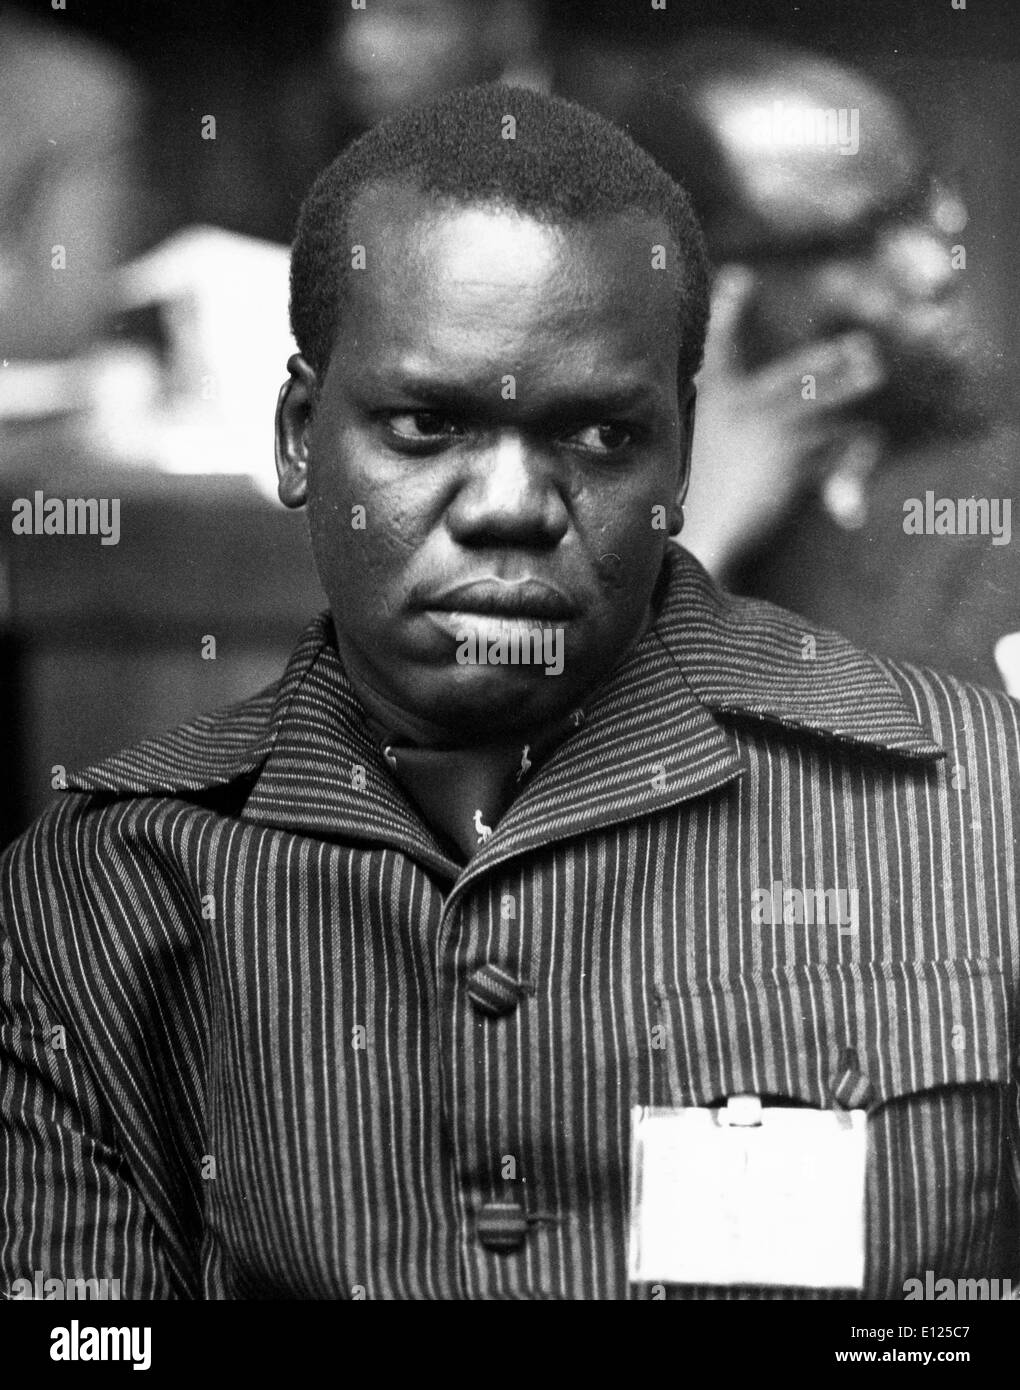 May 21, 1992; Kampala, Uganda; Lt. Col. JUMA ORIS ABDALLA, Minister for Foreign Affairs. Stock Photo